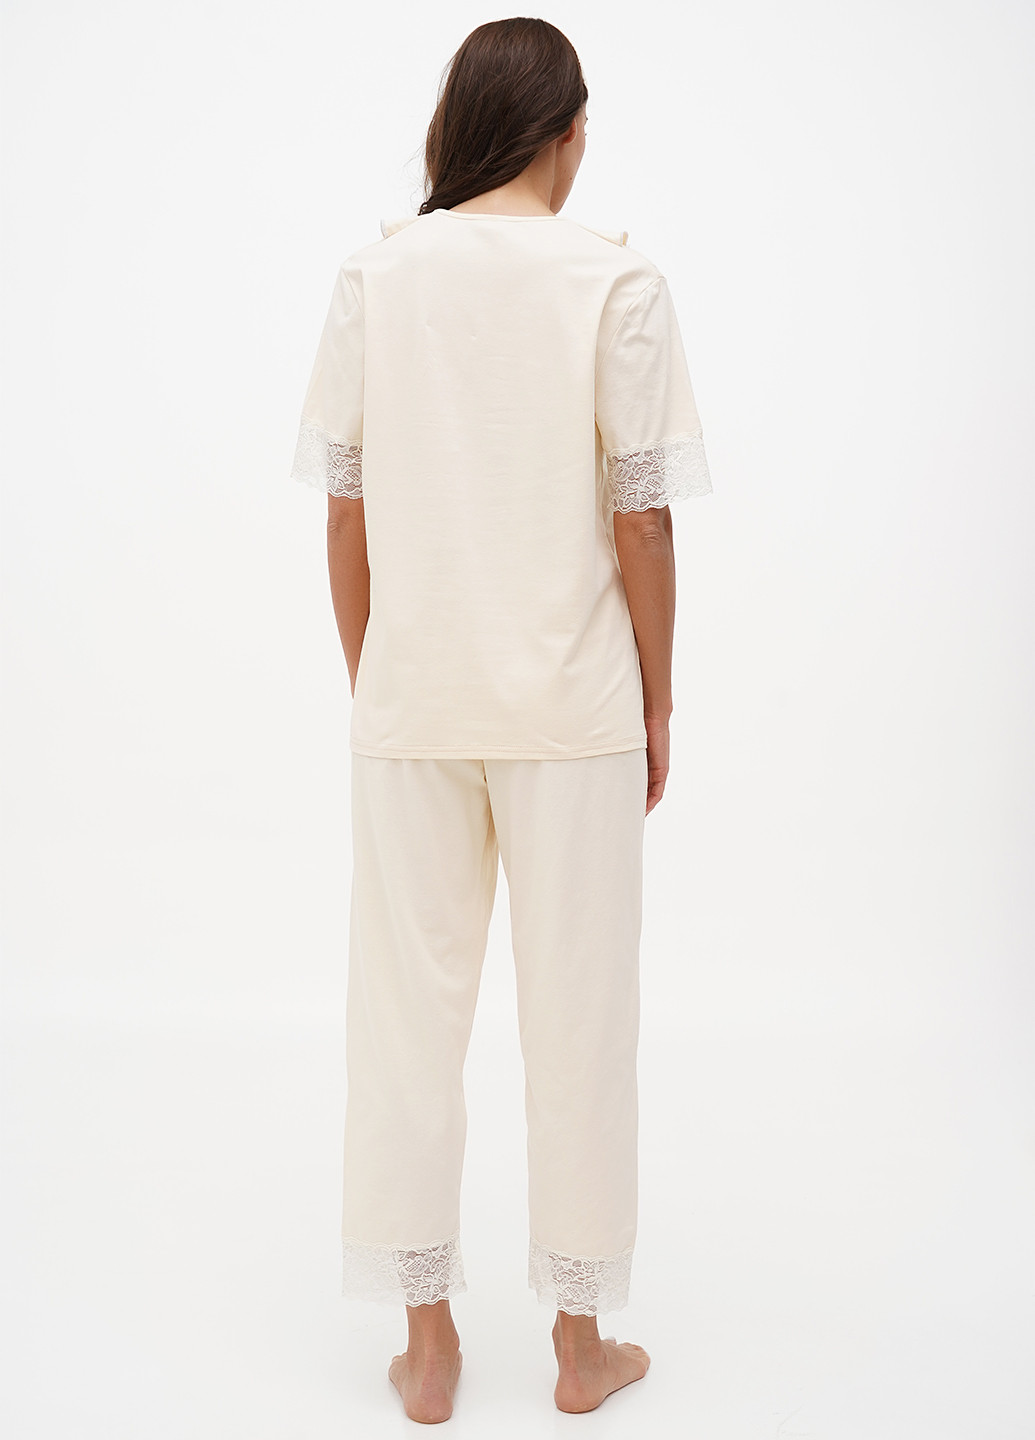 Молочная летняя пижама (футболка, брюки) футболка + брюки Lucci